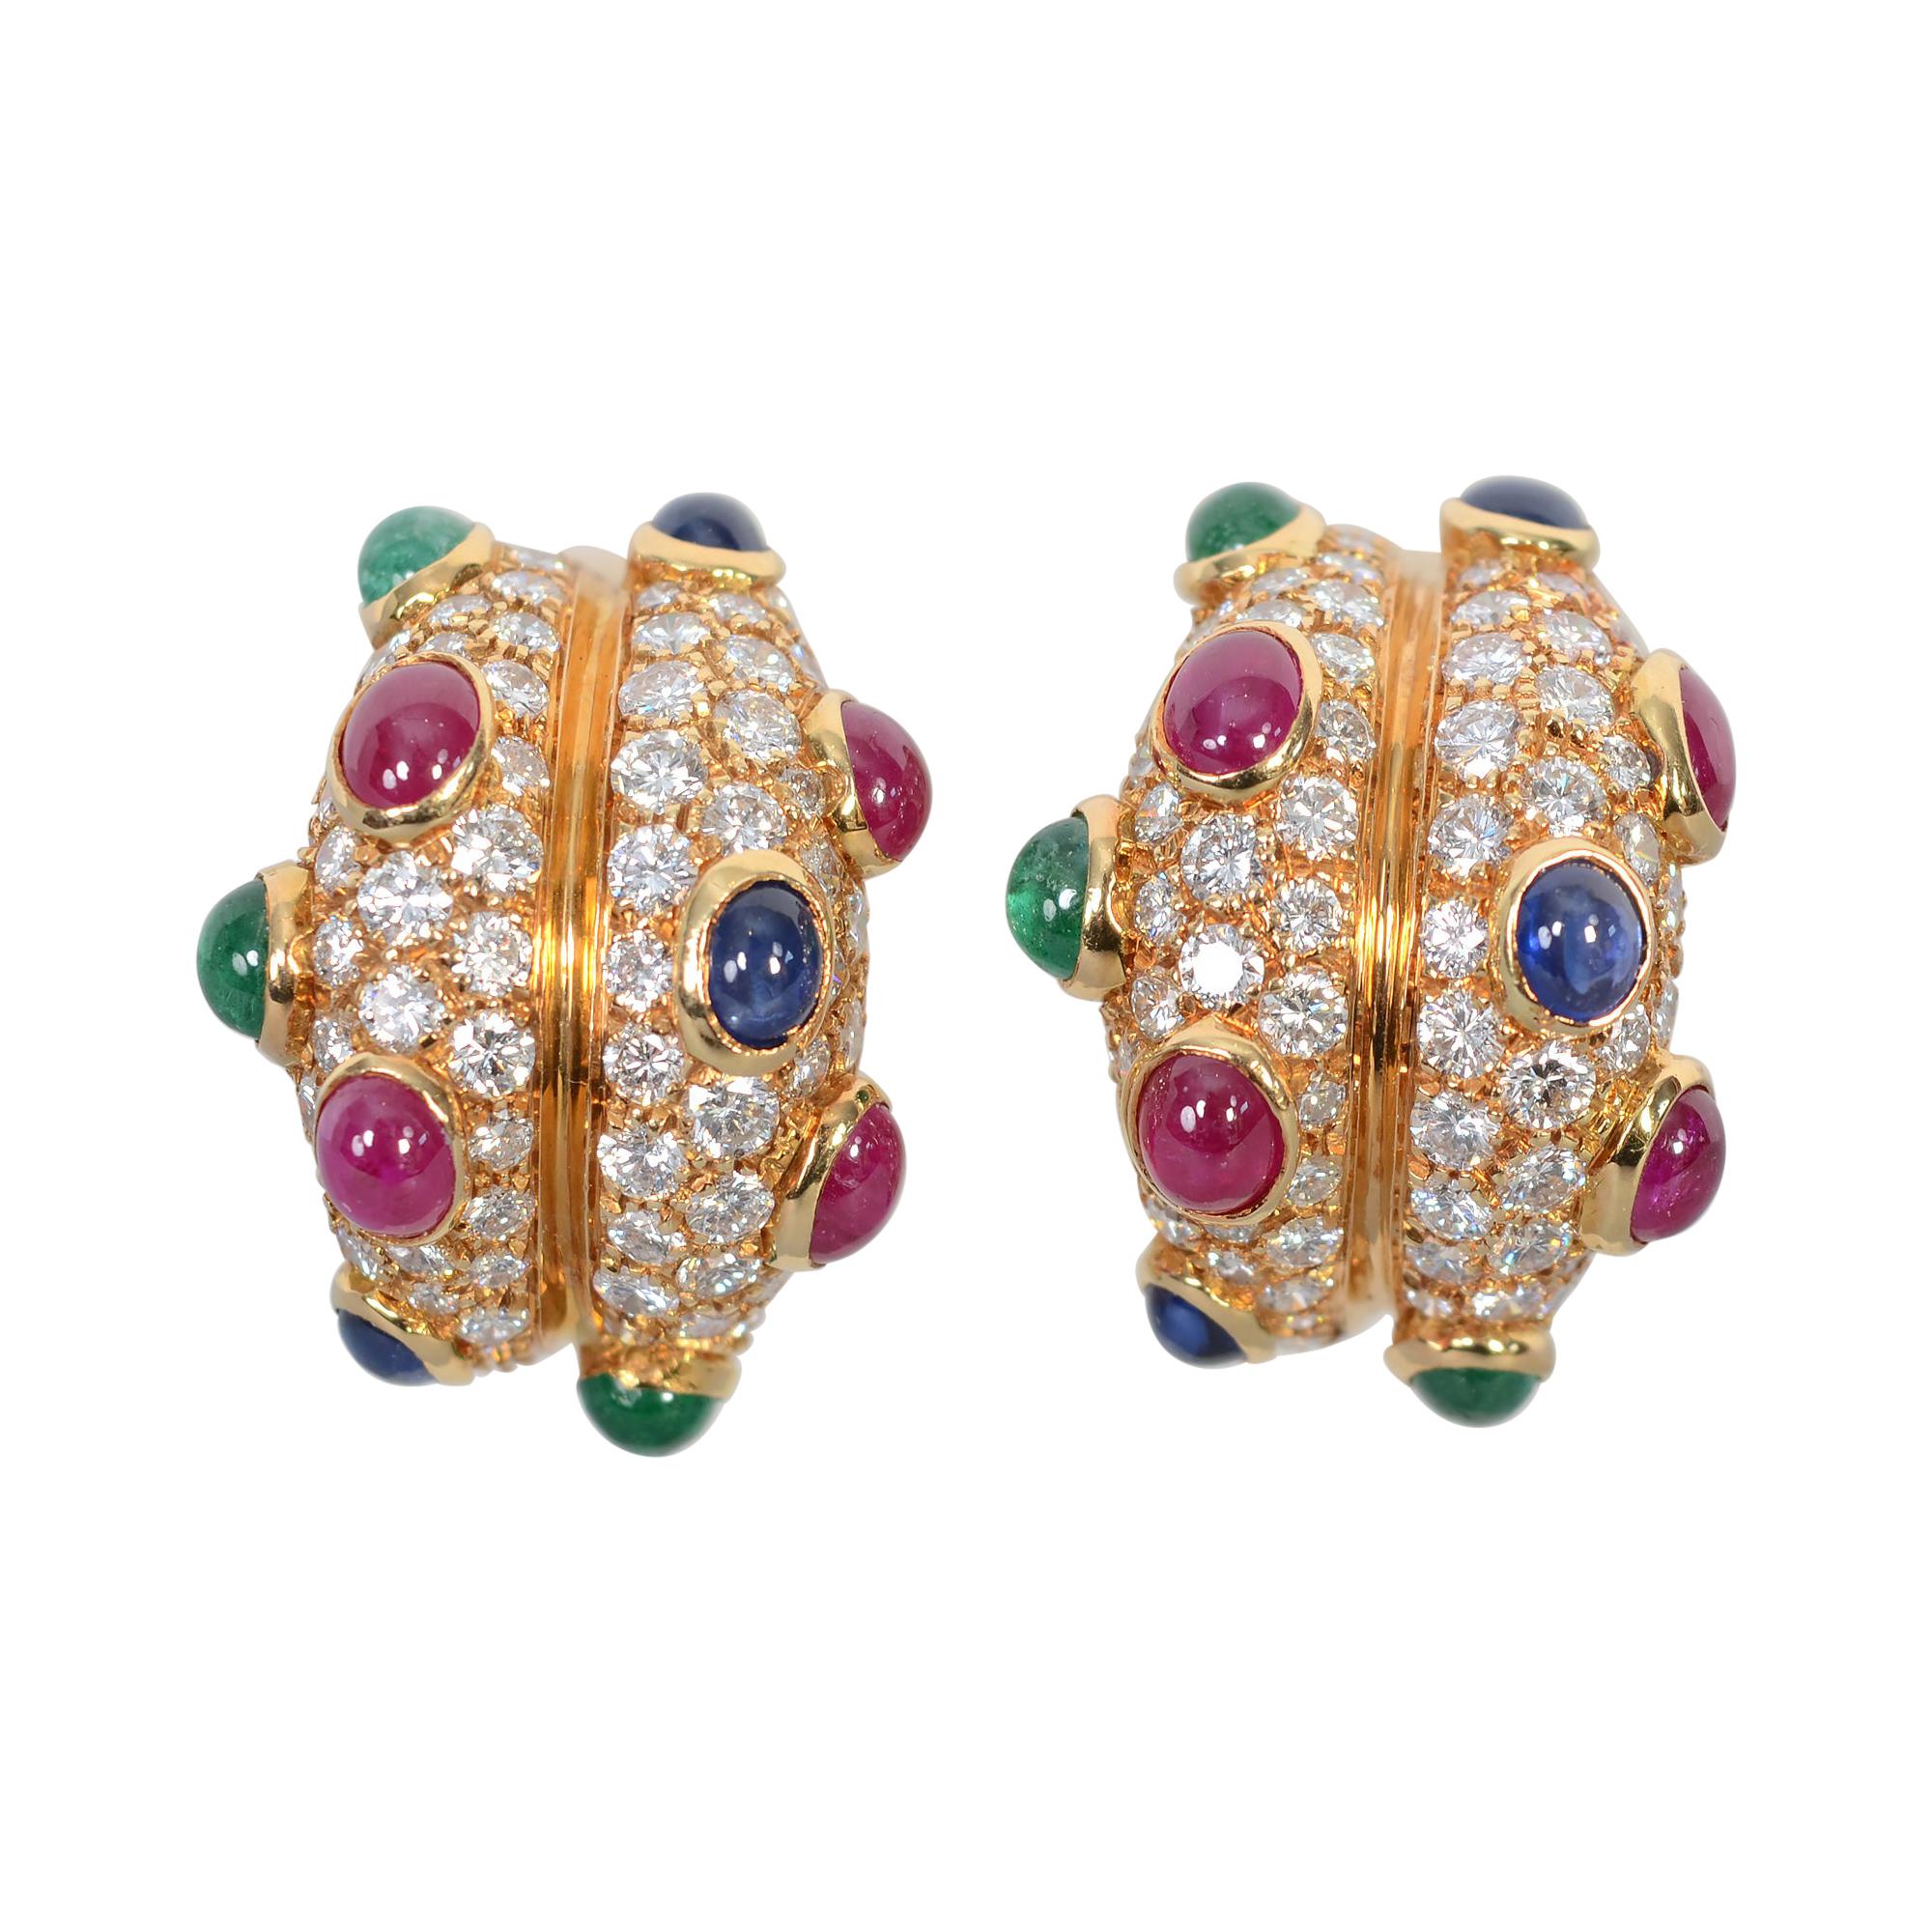 Diamond Half Hoop Earrings with Rubies, Sapphires and Emeralds